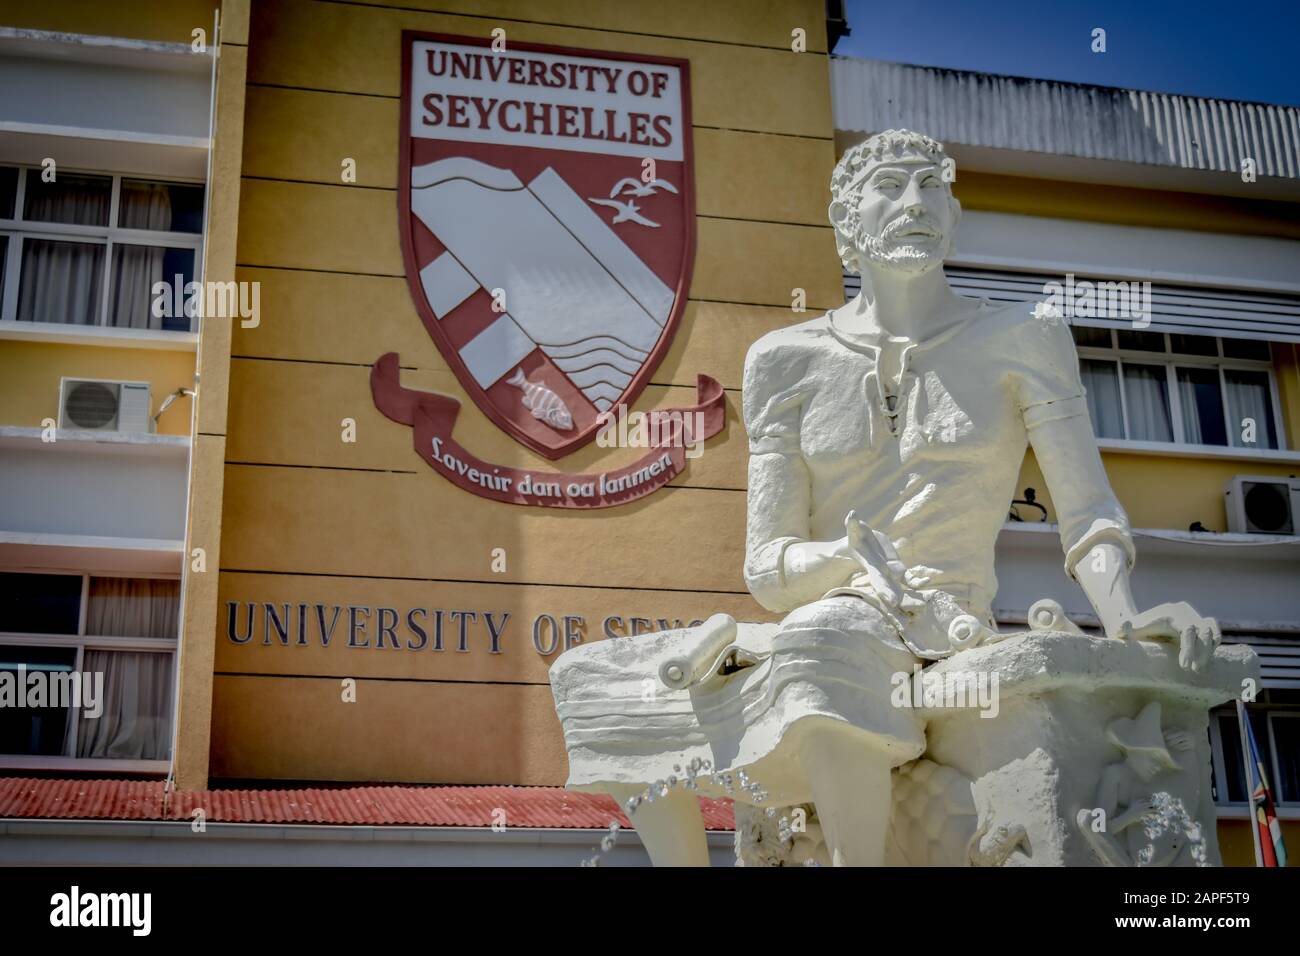 Une représentation visuelle de l'Université des seychelles le meilleur point de repère Banque D'Images